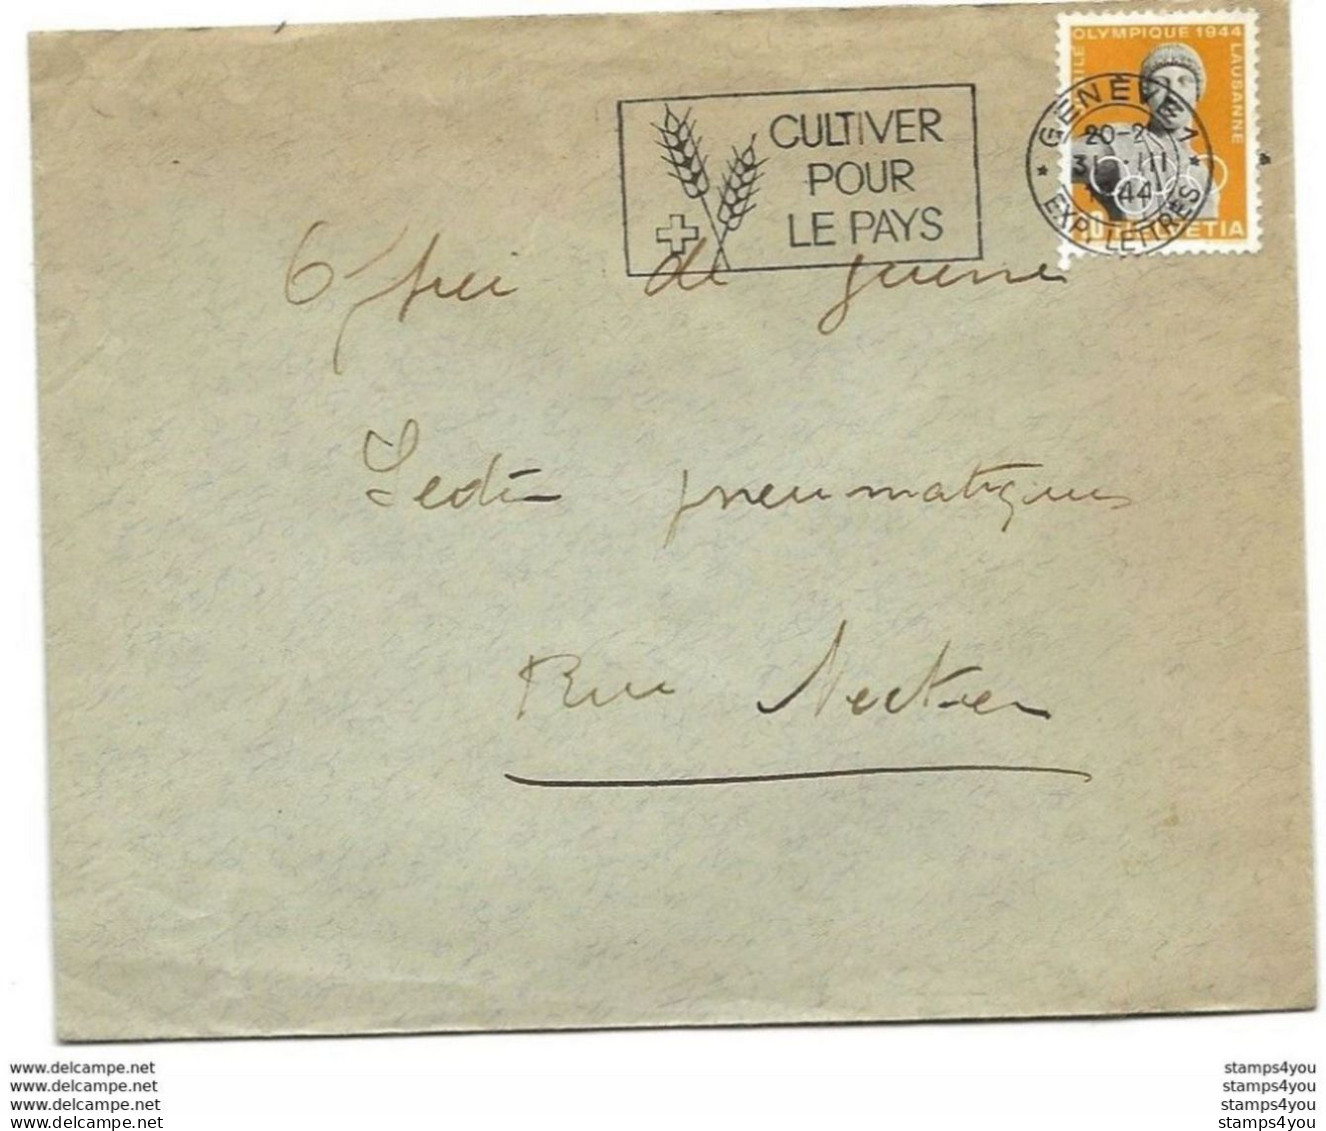 I - 96 - Enveloppe Avec Oblit Mécanique "Cultiver Pour Le Pays" 1944 - Storia Postale